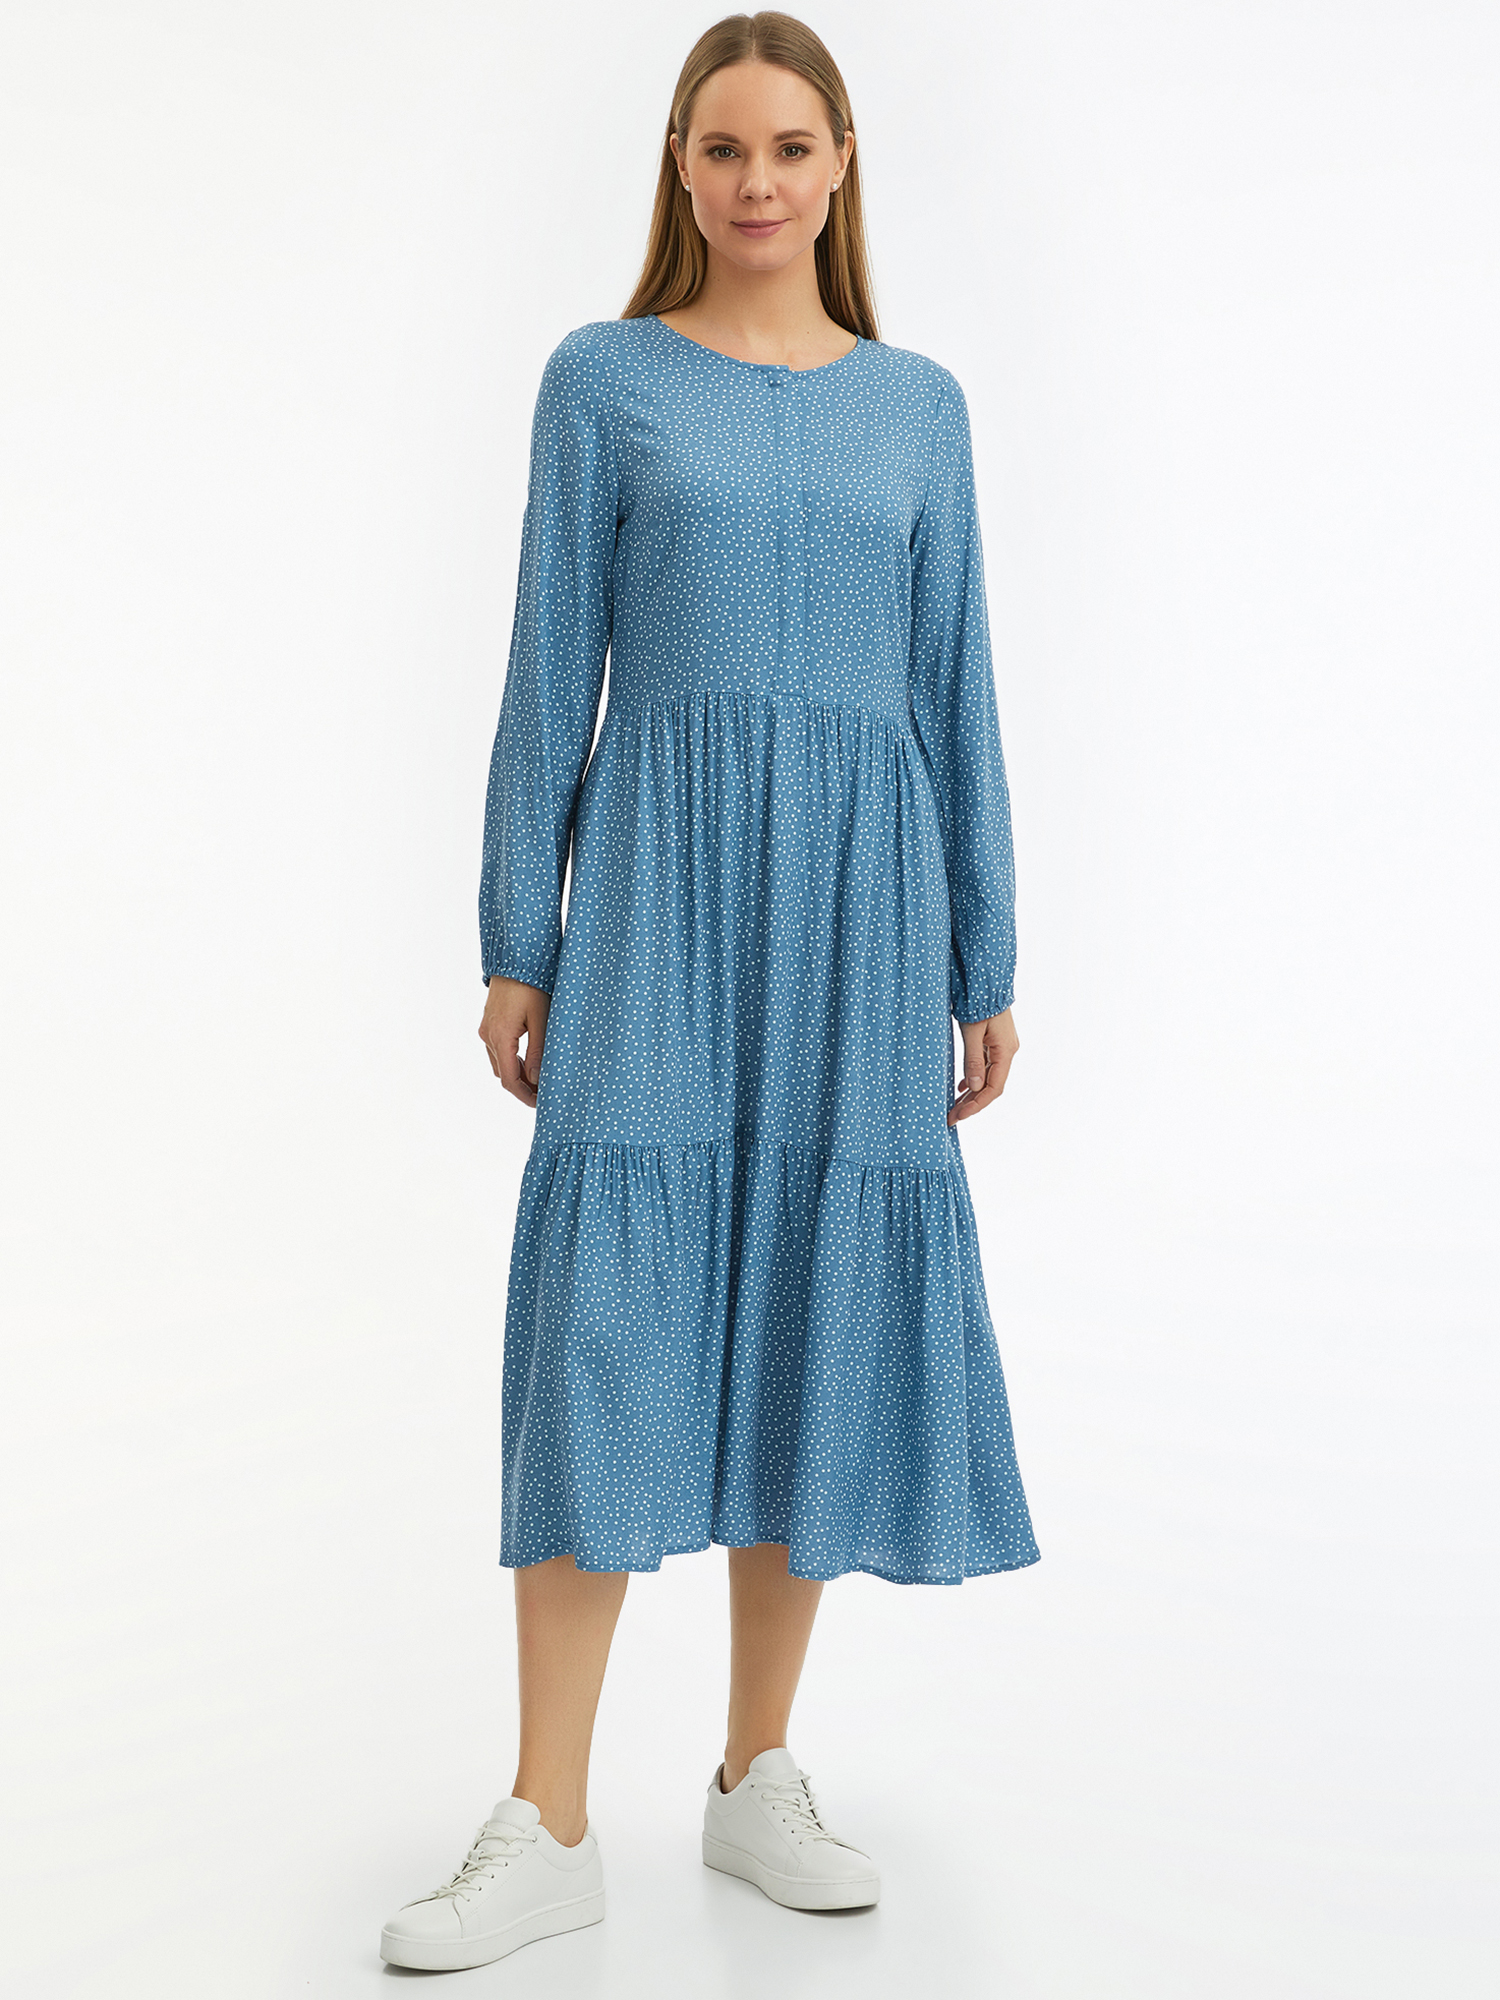 Платье женское oodji 11901165-1 синее 40